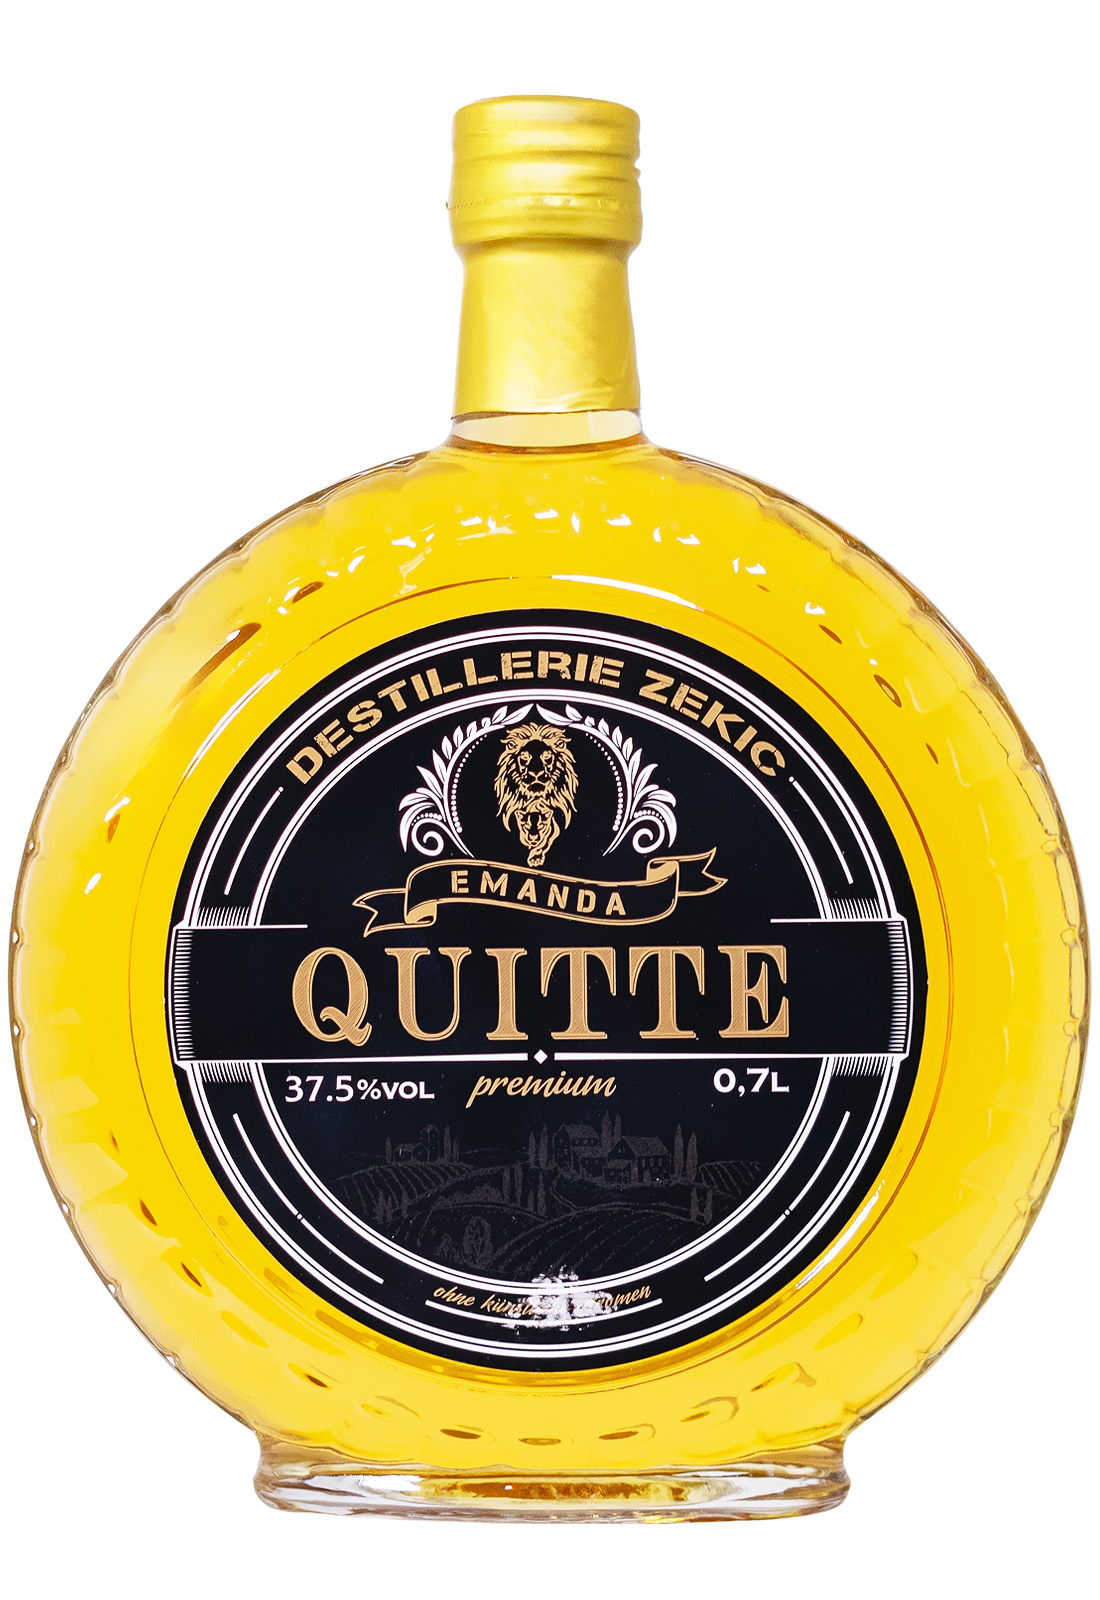 Emanda Quitte Dunja Cutura-Flasche - 0,7L 37,5% vol